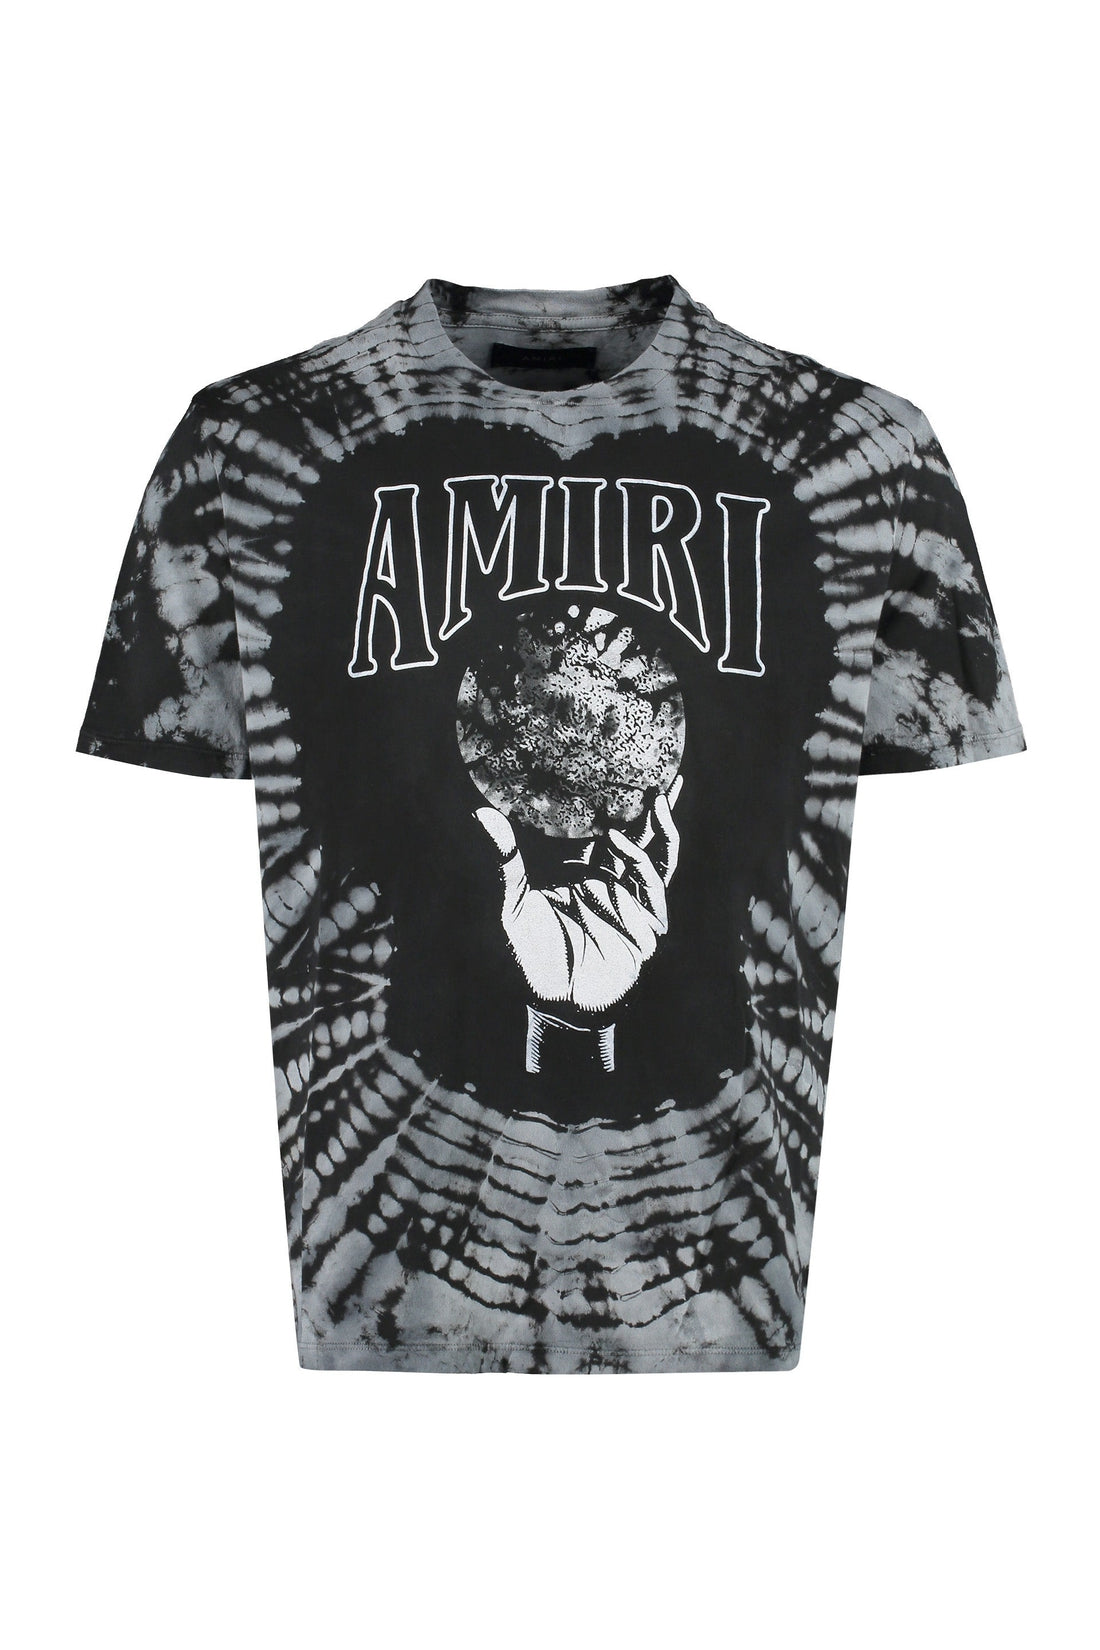 AMIRI-OUTLET-SALE-Printed cotton T-shirt-ARCHIVIST